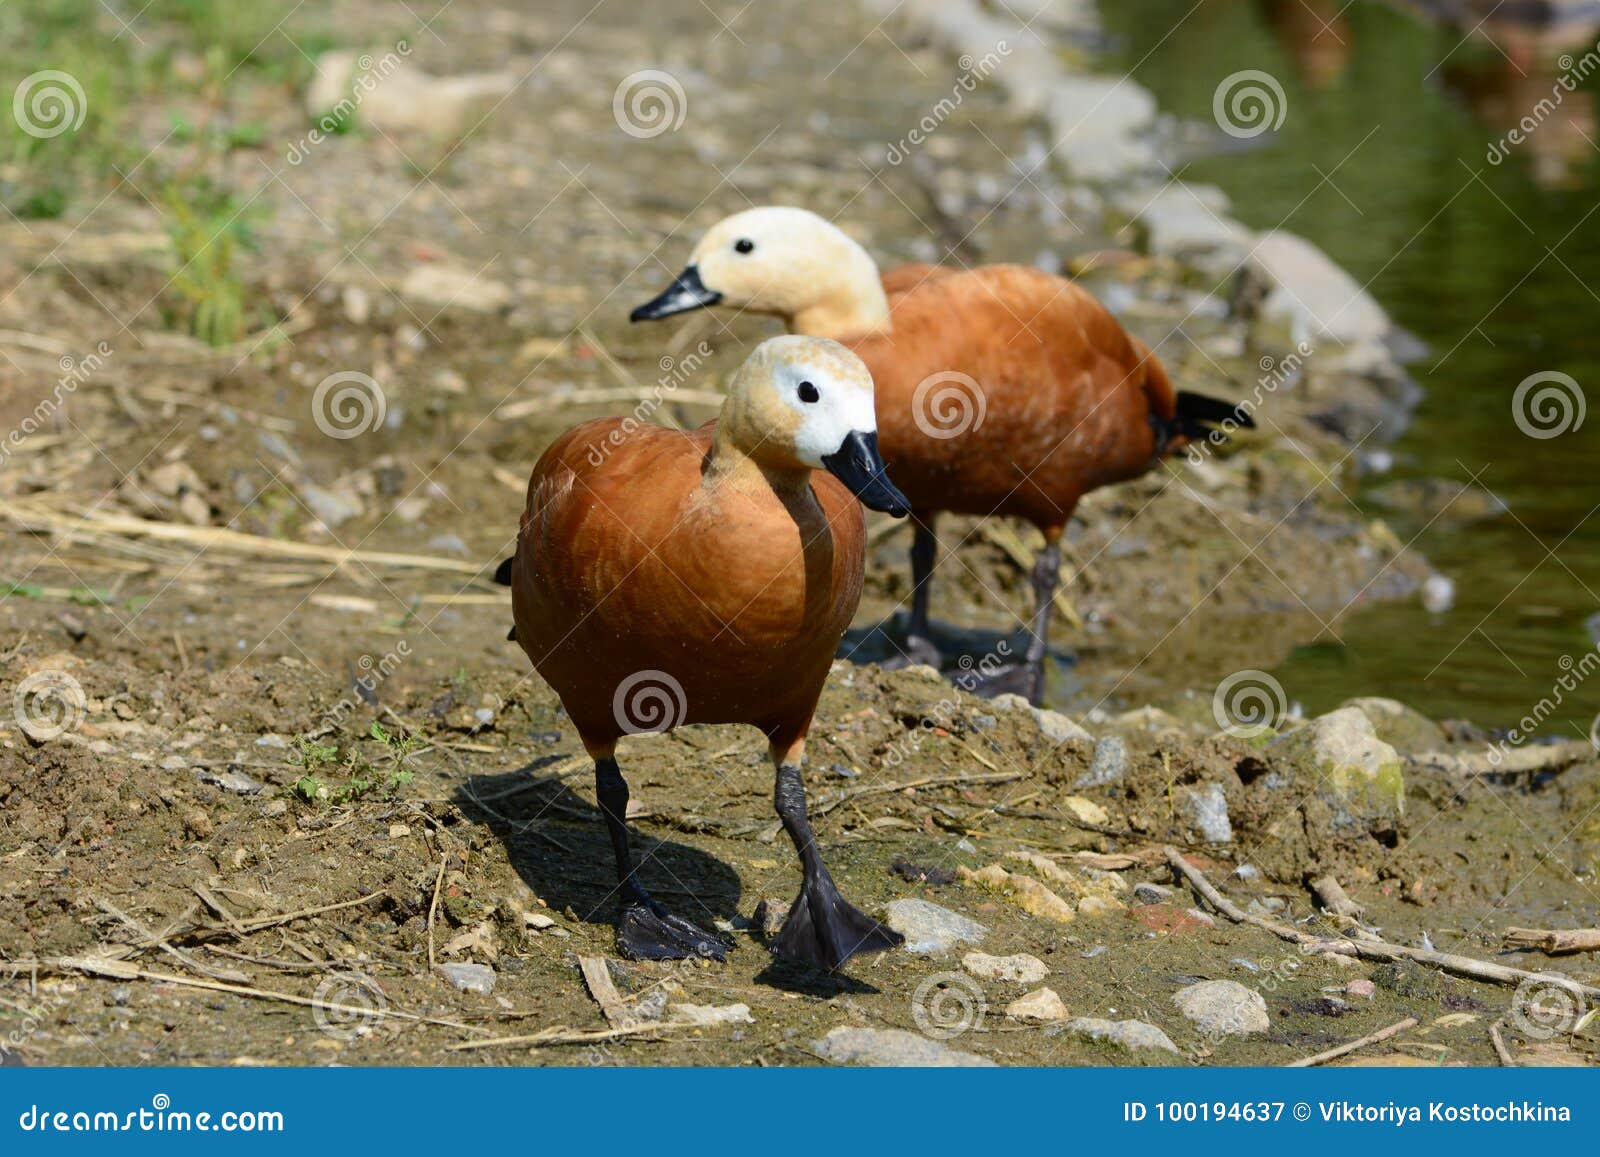 two ruddy shel ducks walking